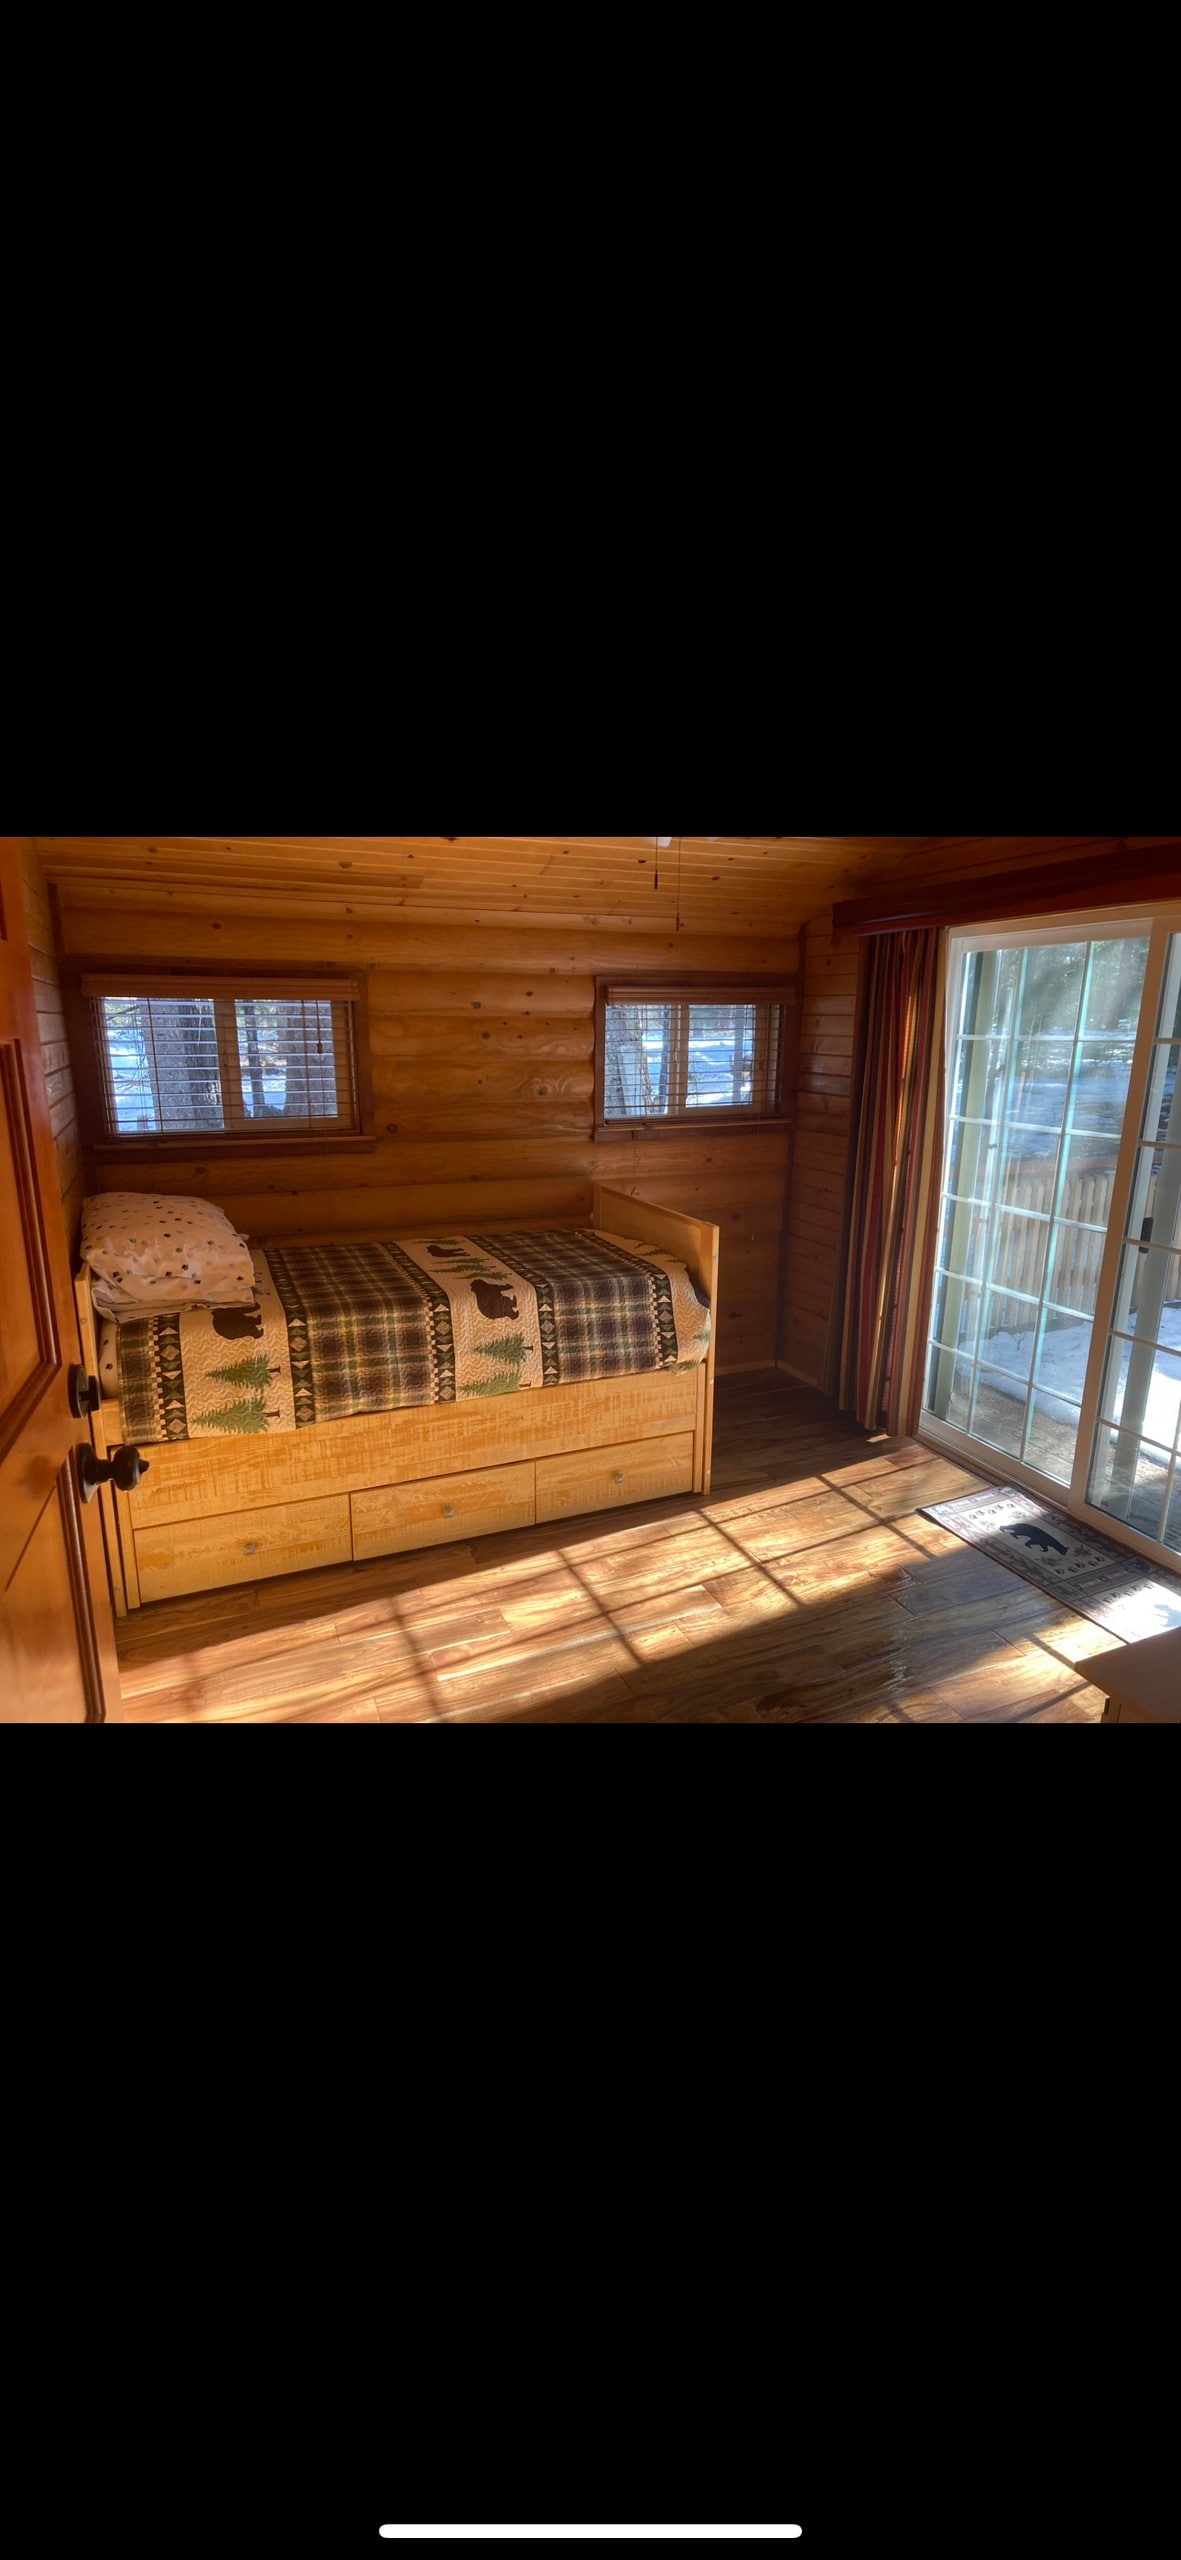 4 bedroom Cabin close to Lassen